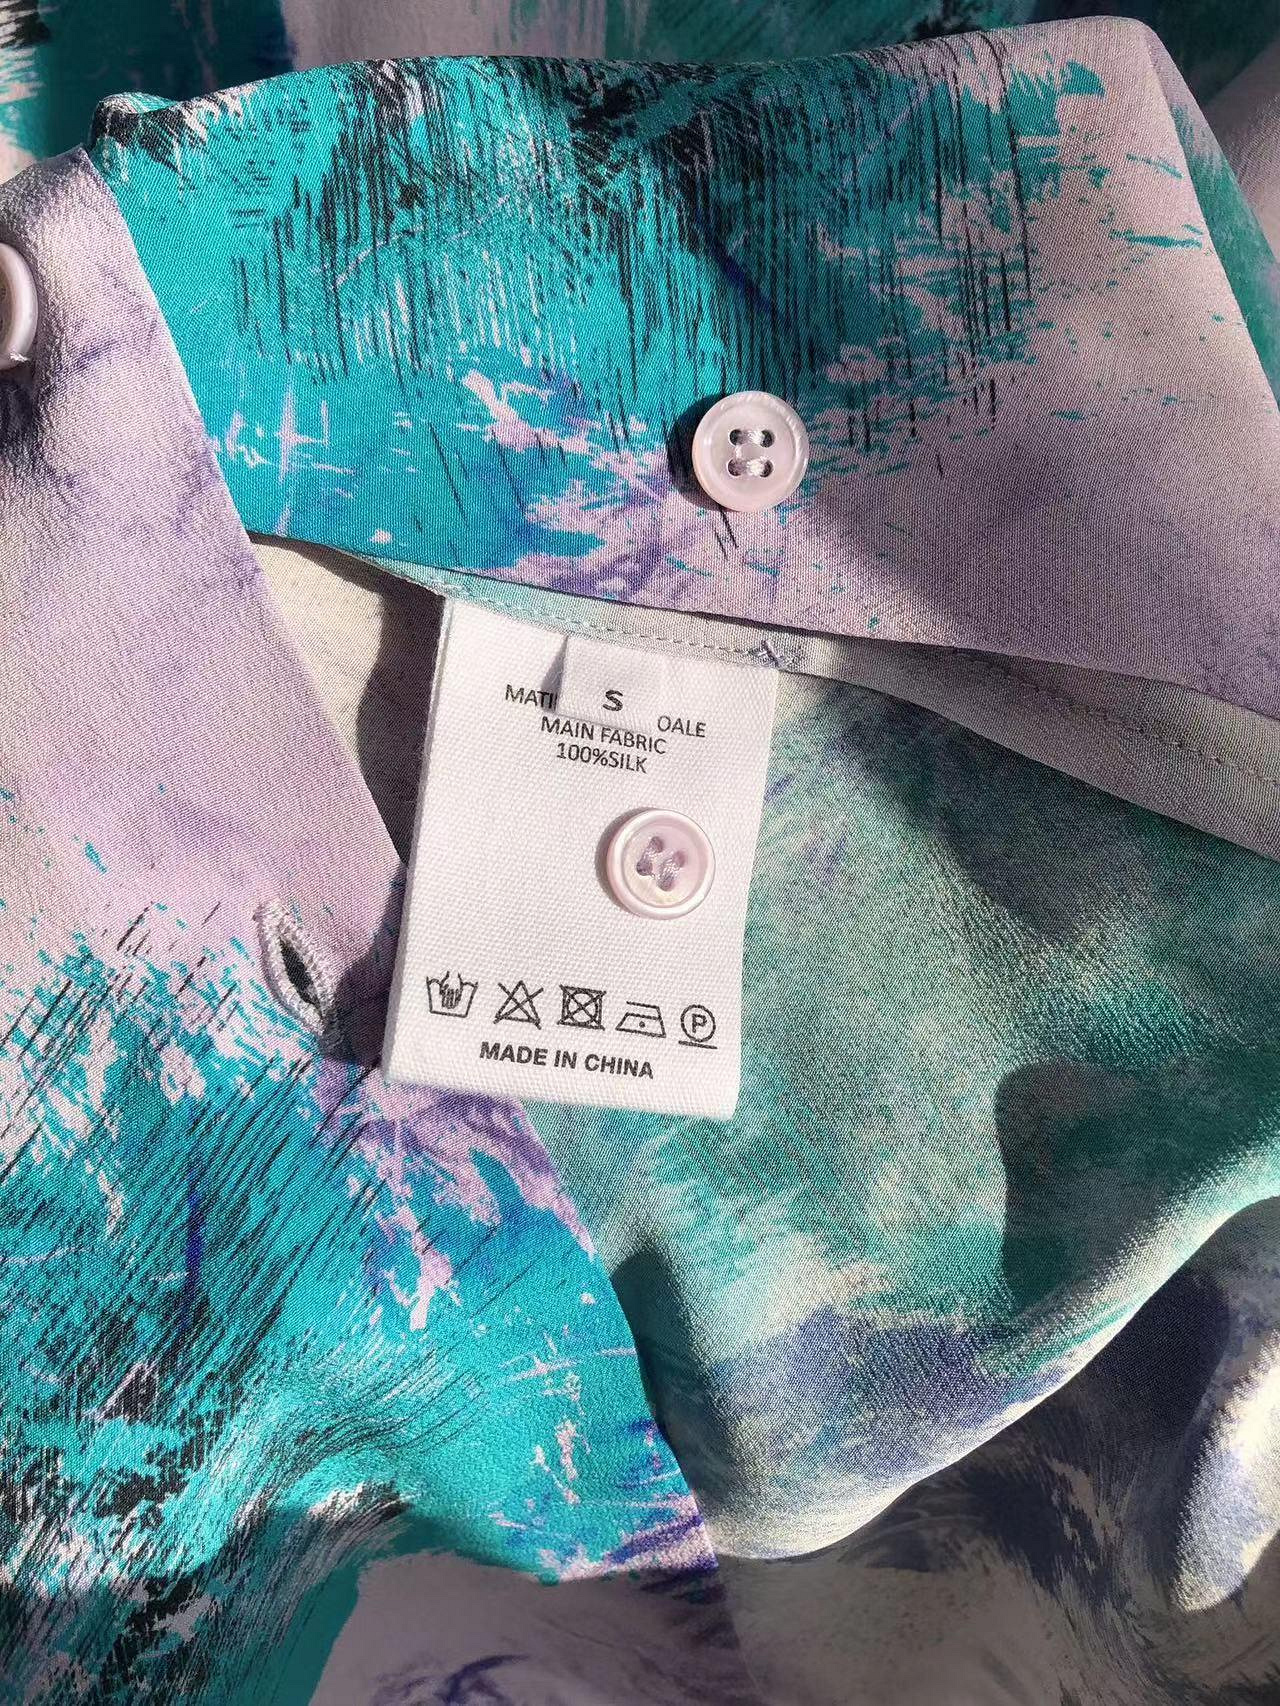 17姆米砂洗真絲雙縐100%桑蠶絲綠紫畫布·復古文藝氣息 簡約版砂洗真絲長袖襯衫  曼